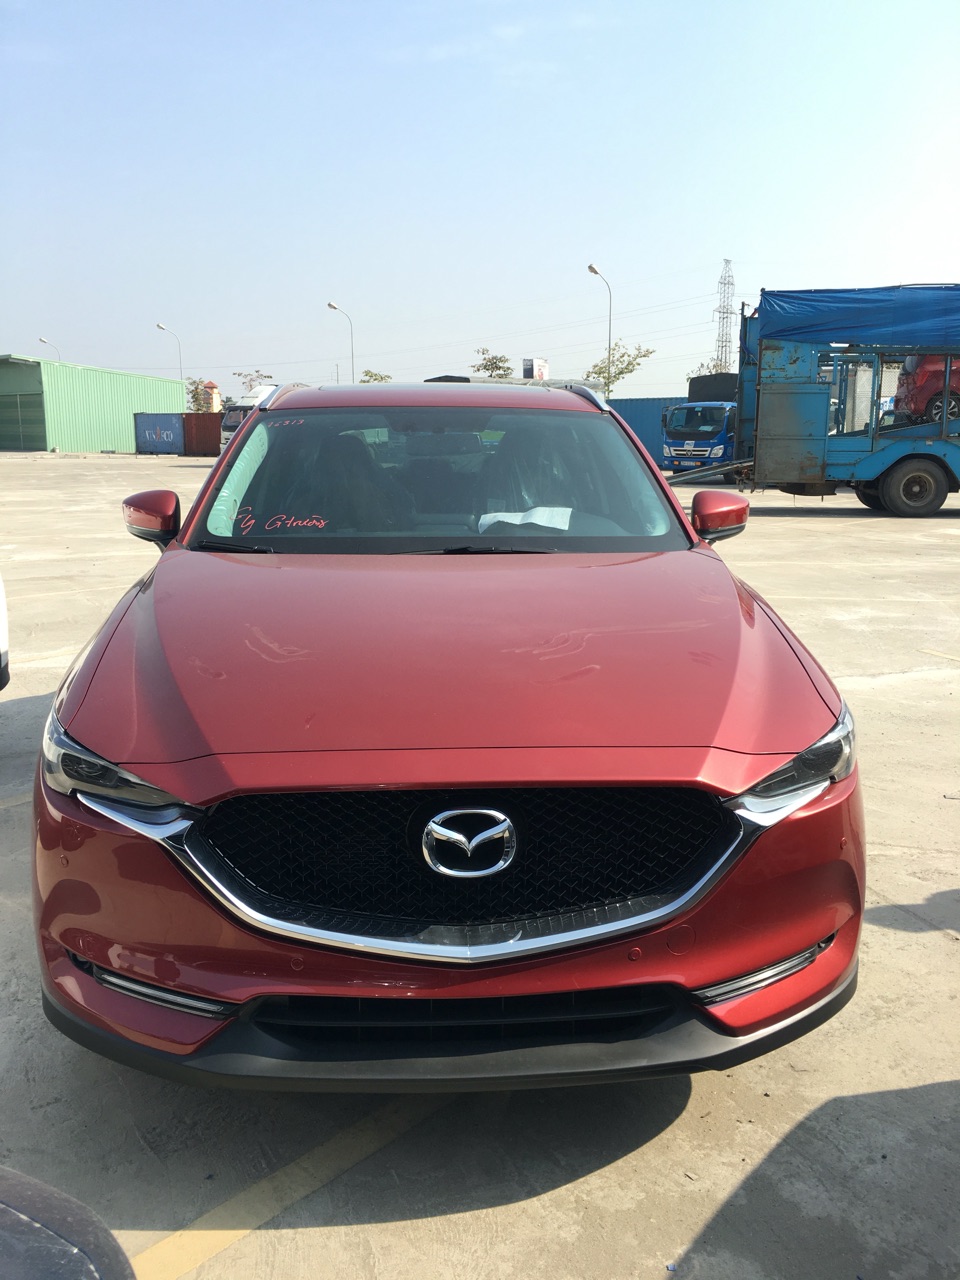 Mazda CX 5 2018 - Mazda Giải Phóng bán xe Mazda CX-5 đời 2018 giao xe nhanh, giá tốt nhất, liên hệ 0981118259 - 0914252882 để hưởng ưu đãi